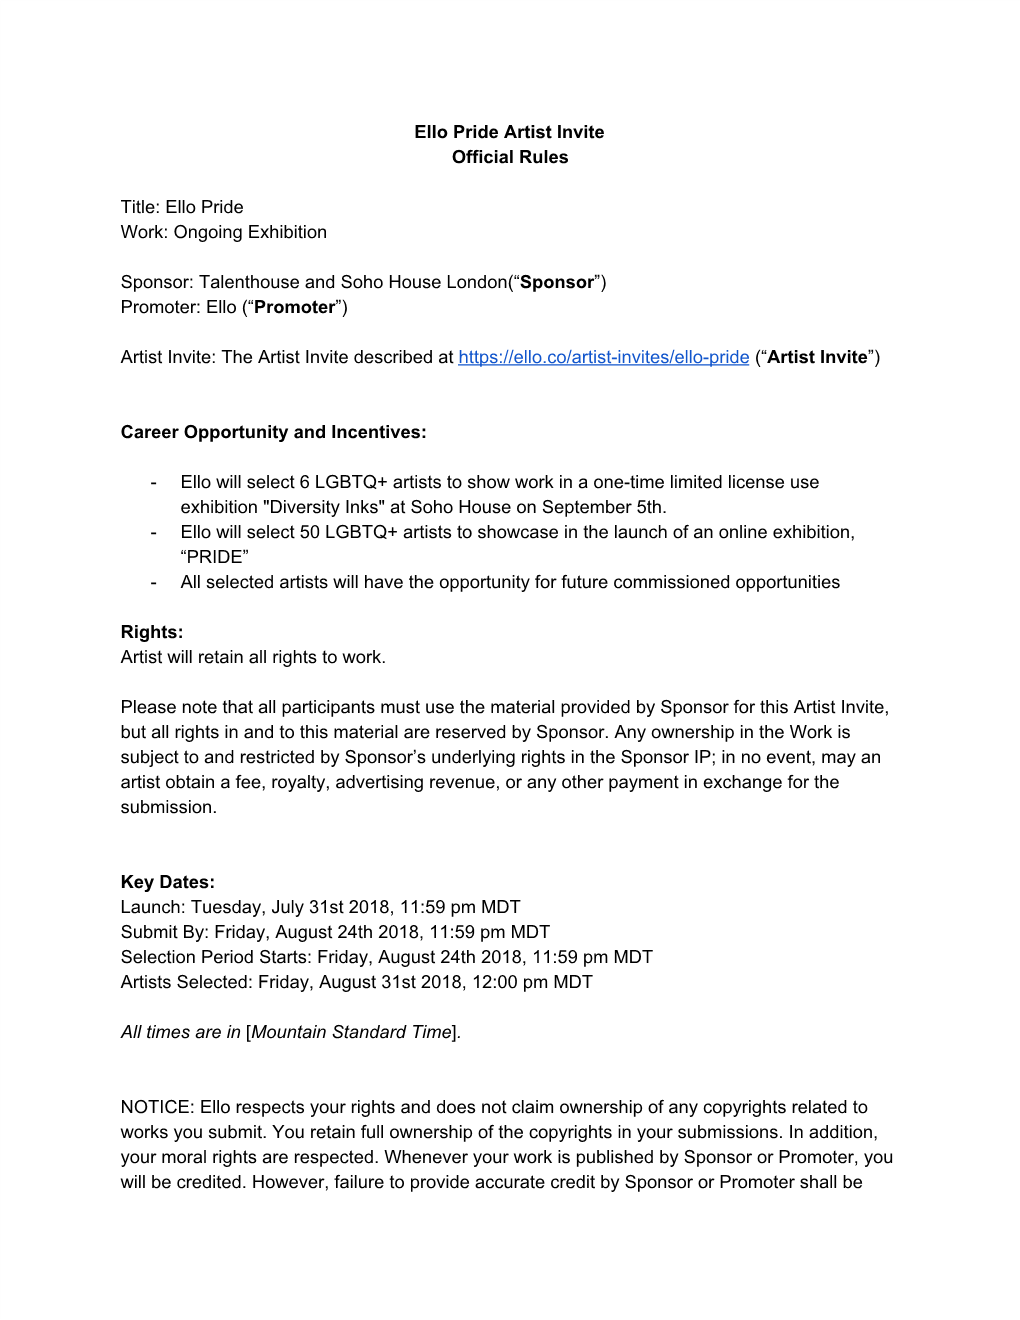 Ello Pride Artist Invite Official Rules Title: Ello Pride Work: Ongoing